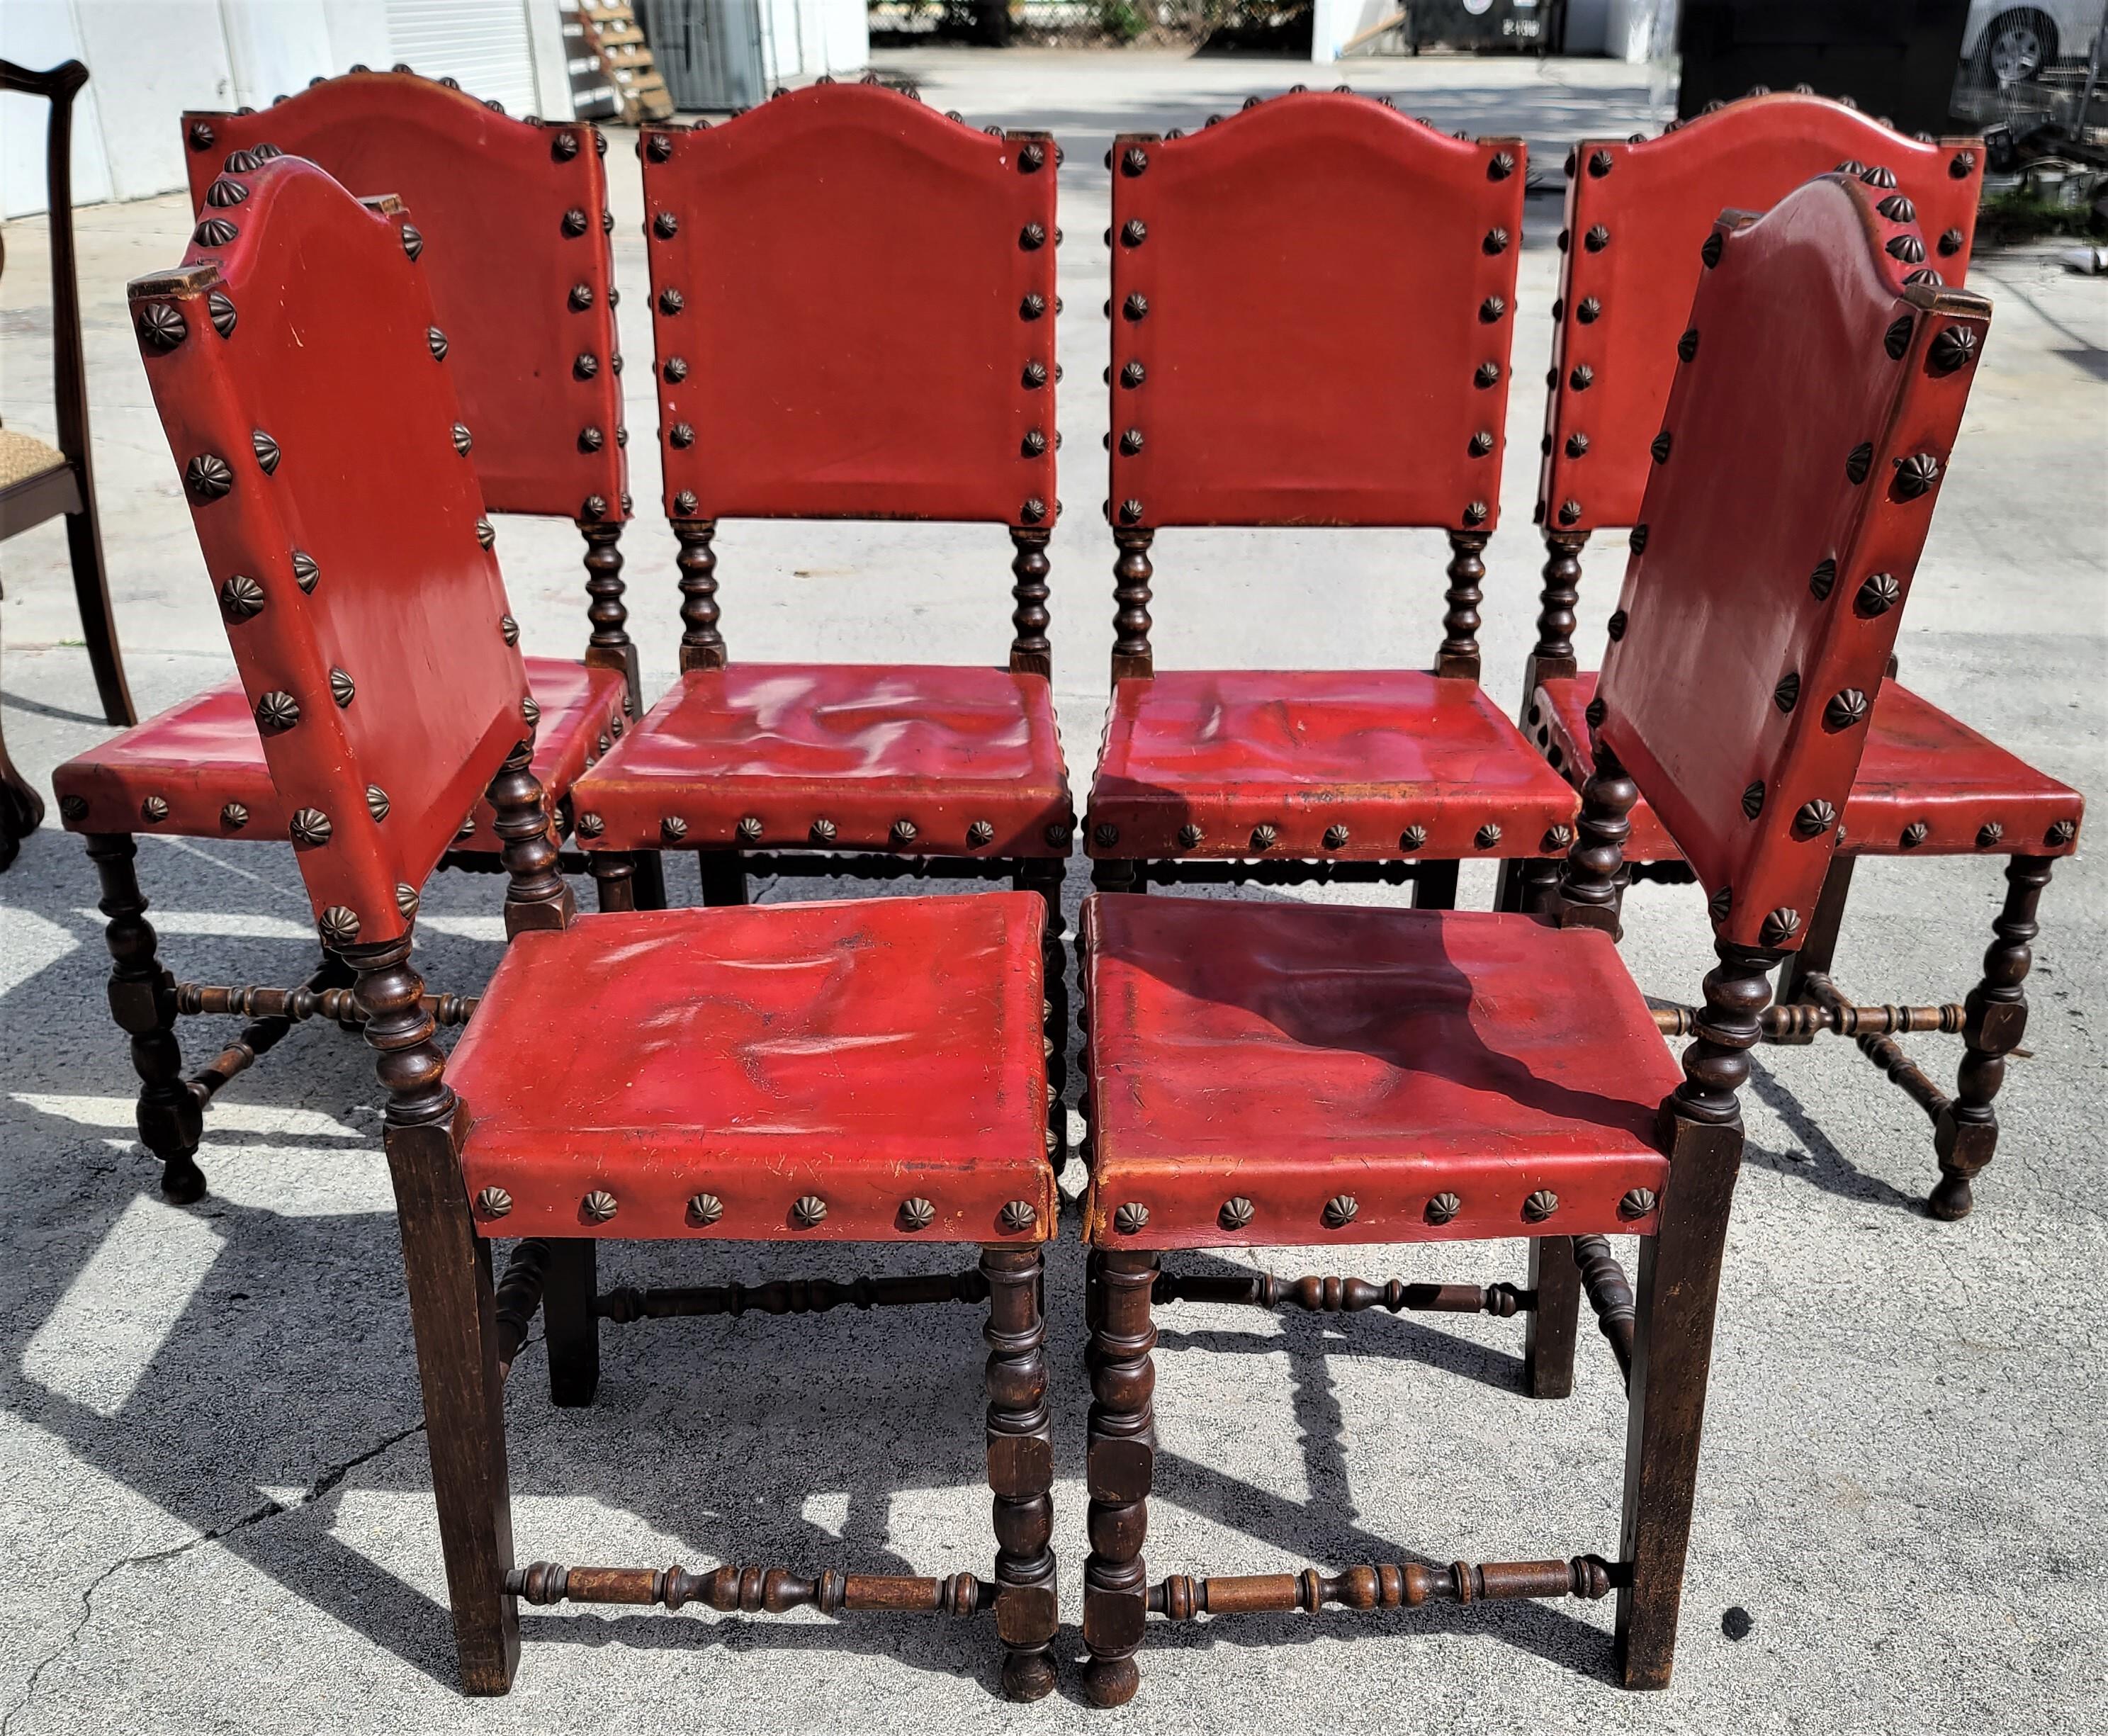 Nous vous proposons l'une de nos récentes acquisitions de meubles fins Palm Beach Estate d'un
Ensemble de 6 chaises de salle à manger en cuir de style renaissance espagnole 
Fabriqué en Espagne

Mesures approximatives en pouces
41